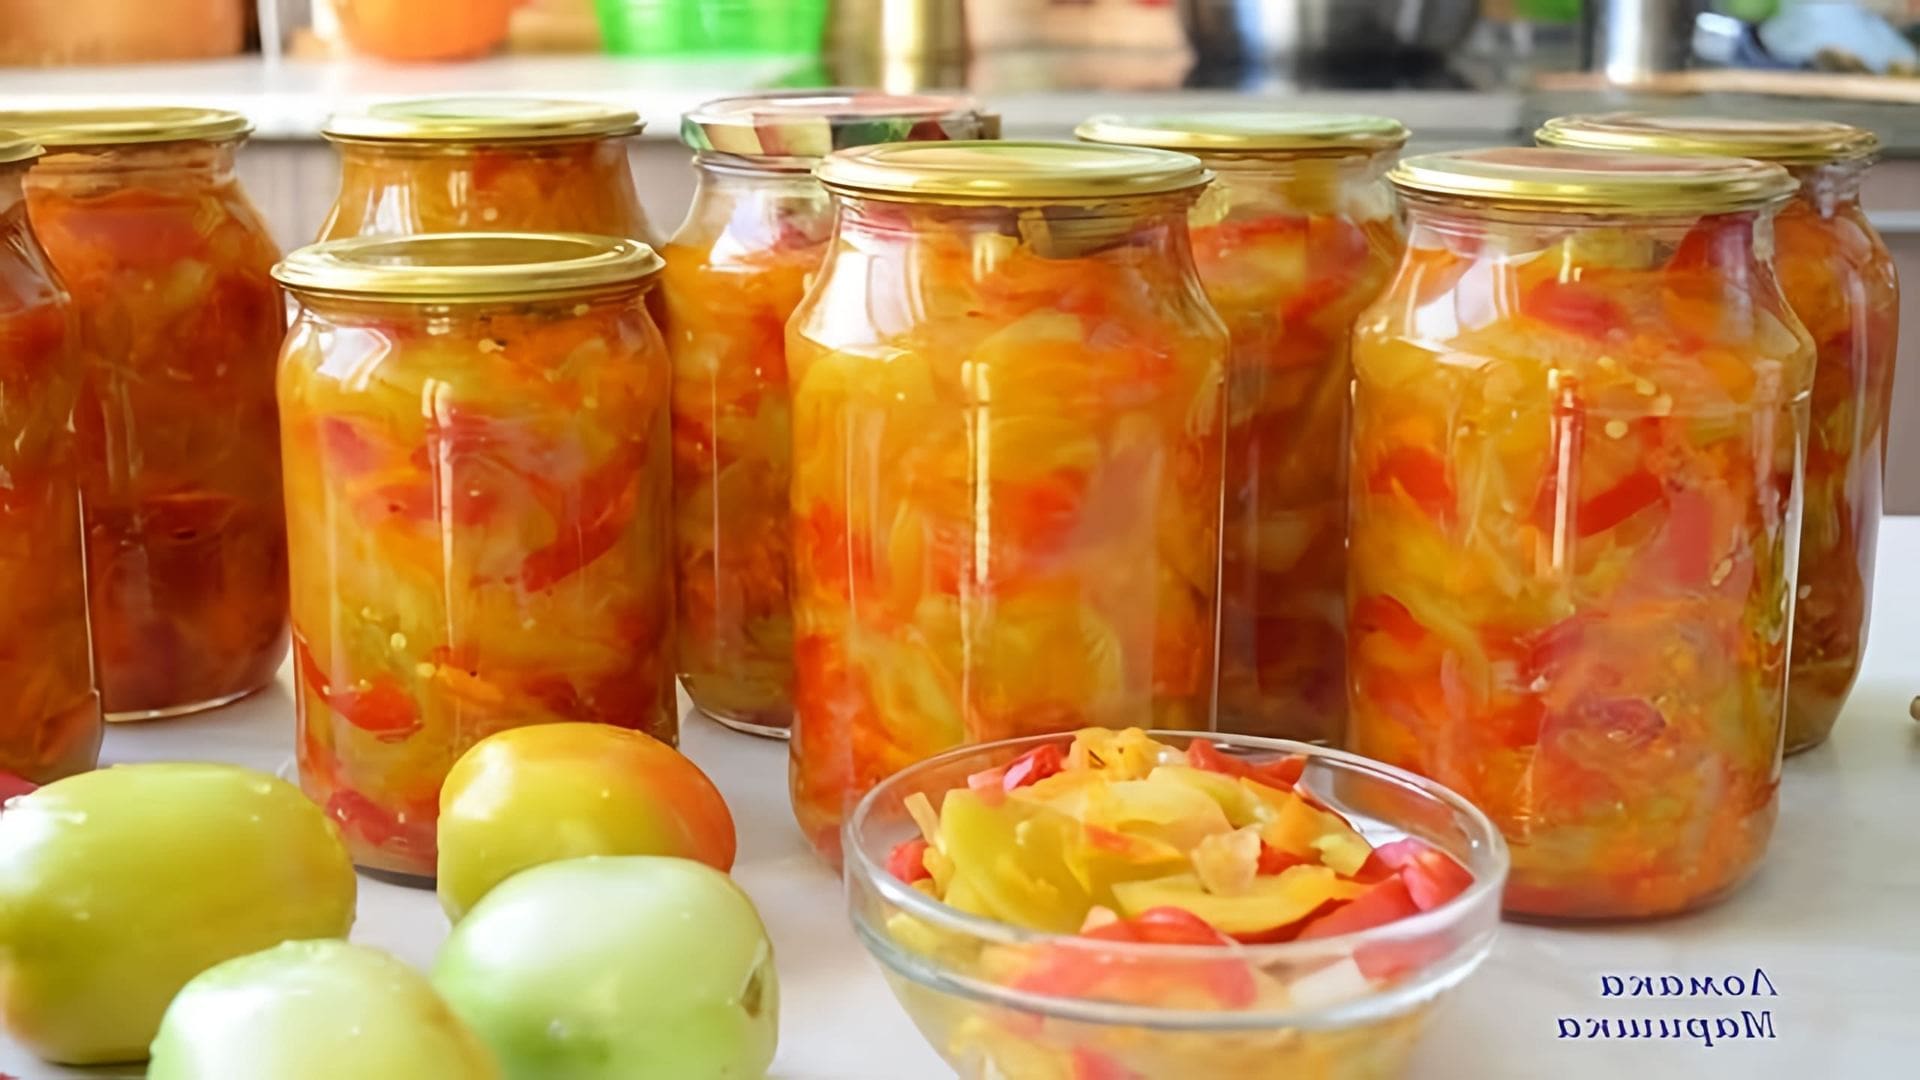 В этом видео демонстрируется процесс приготовления салата "Дунайский" из зеленых помидоров, болгарского перца, острого перца, репчатого лука и моркови